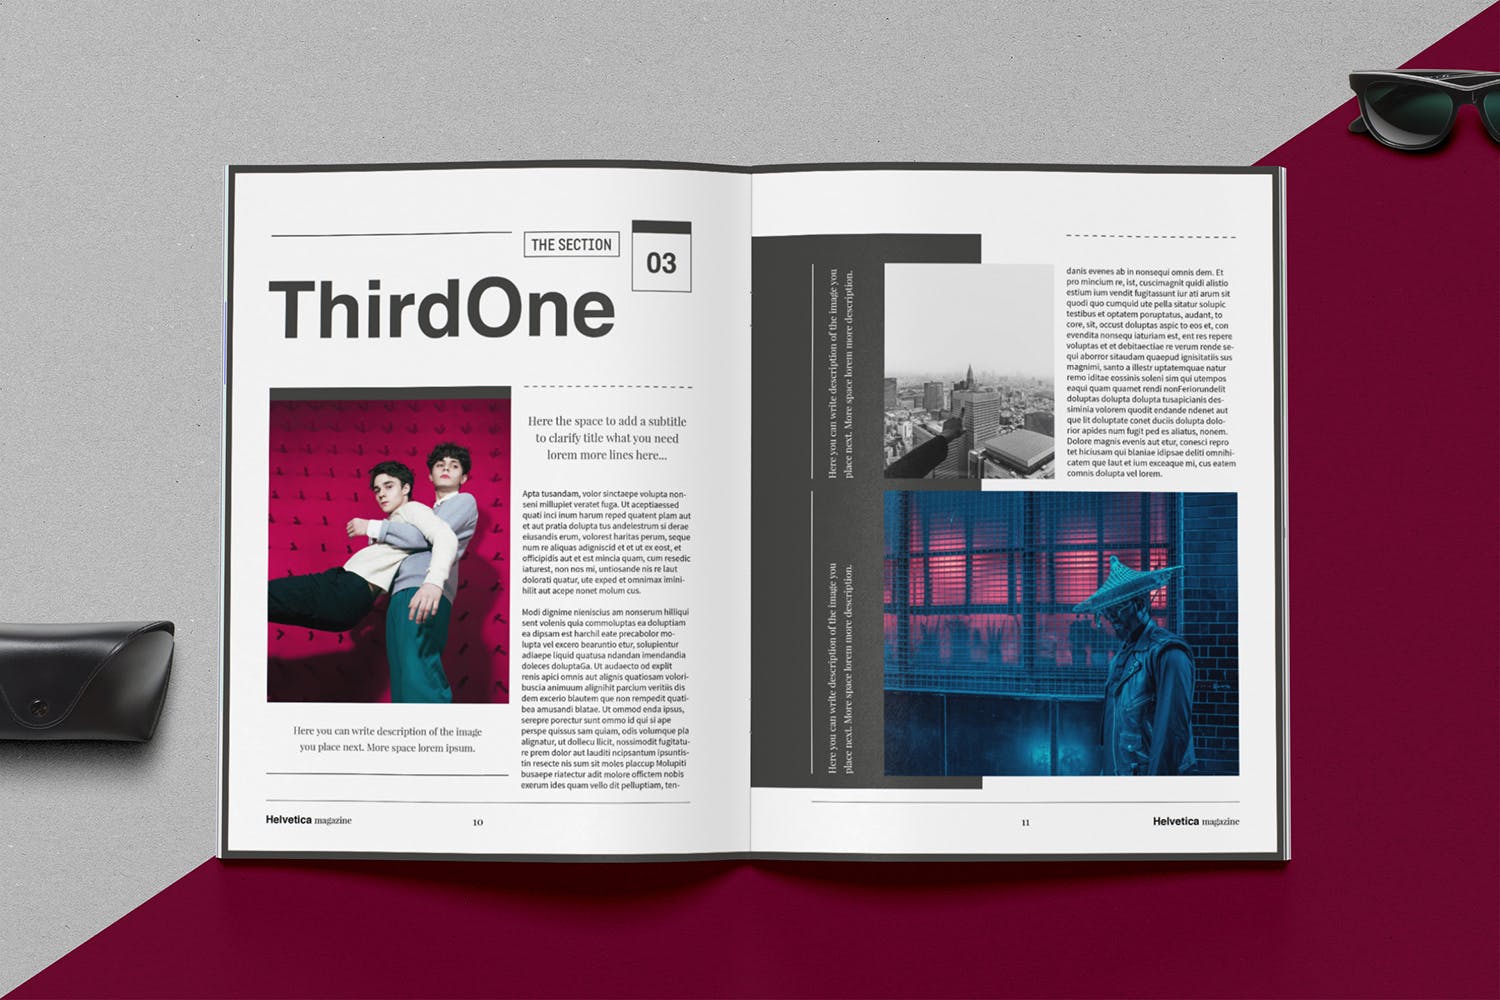 时尚行业产品评测杂志Indesign模板下载 Helvetica Magazine Indesign Template插图(6)